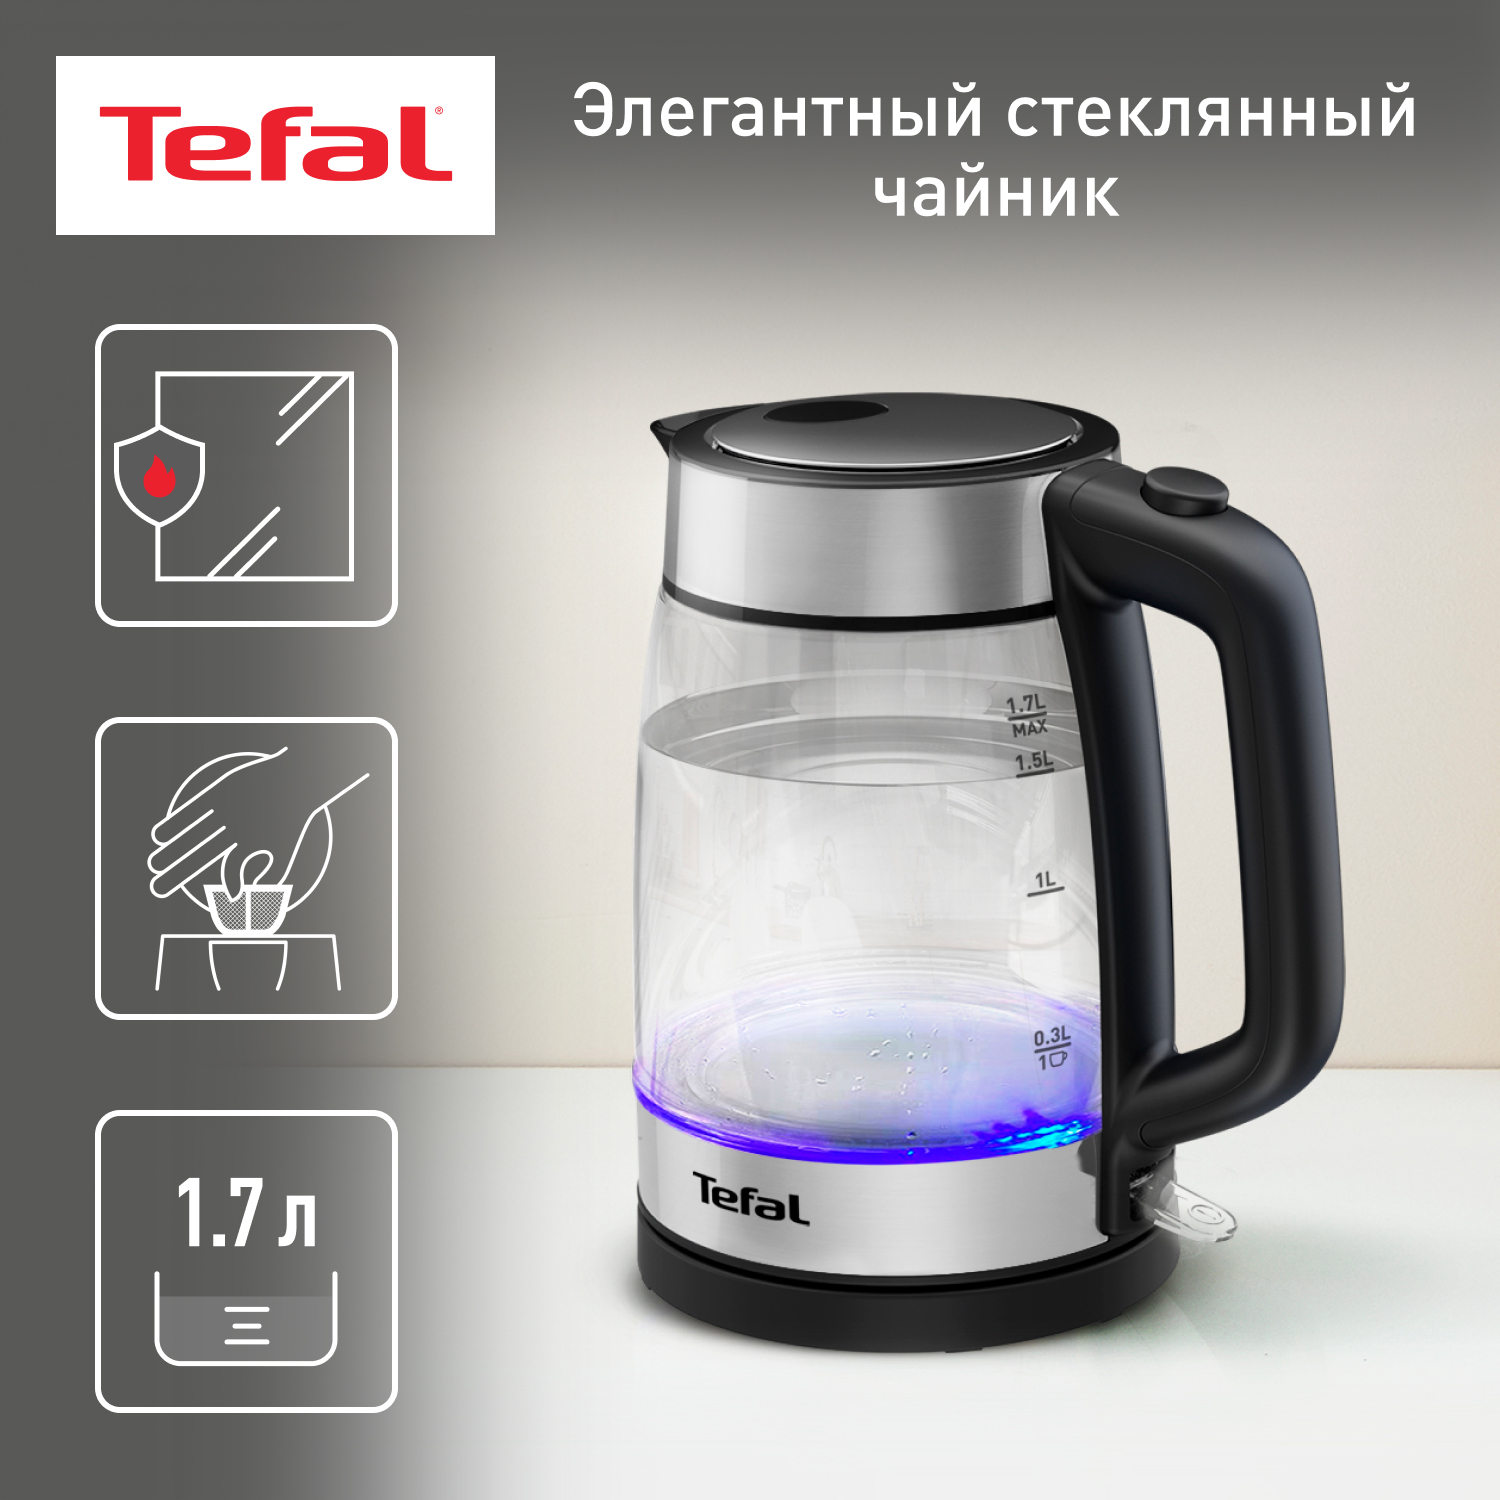 Чайник электрический Tefal KI700830 1.7 л прозрачный, серебристый, черный - купить в Официальный магазин Tefal (доставка силами продавца), цена на Мегамаркет